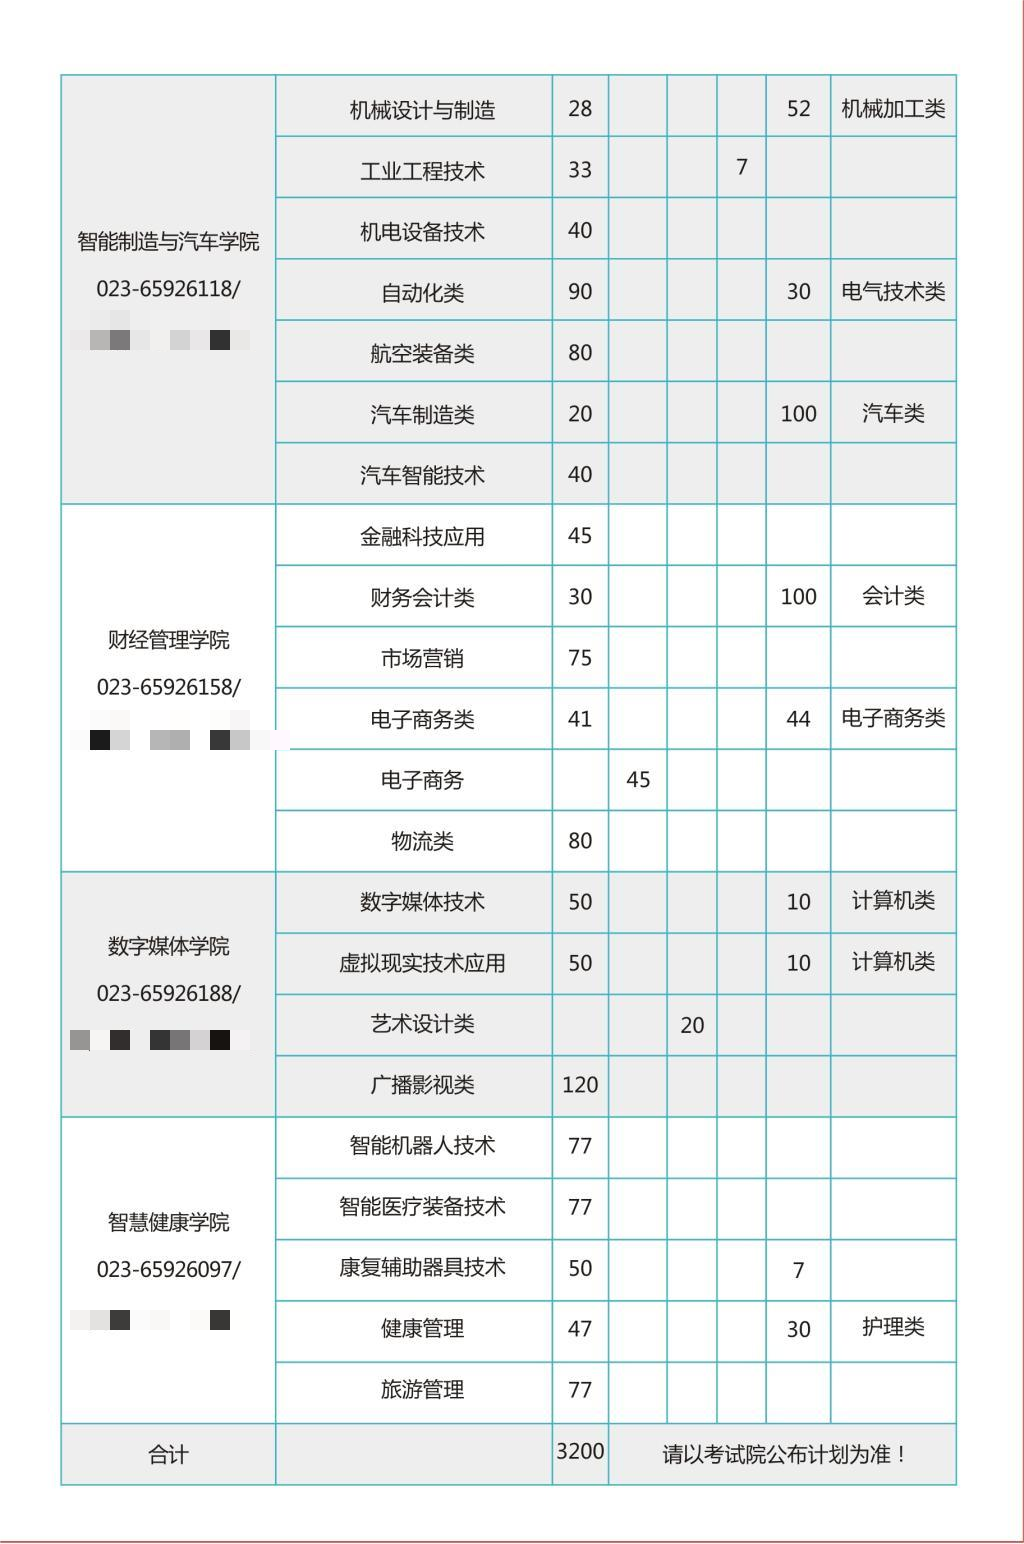 2023年重庆电子工程职业学院高职分类考试招生简章